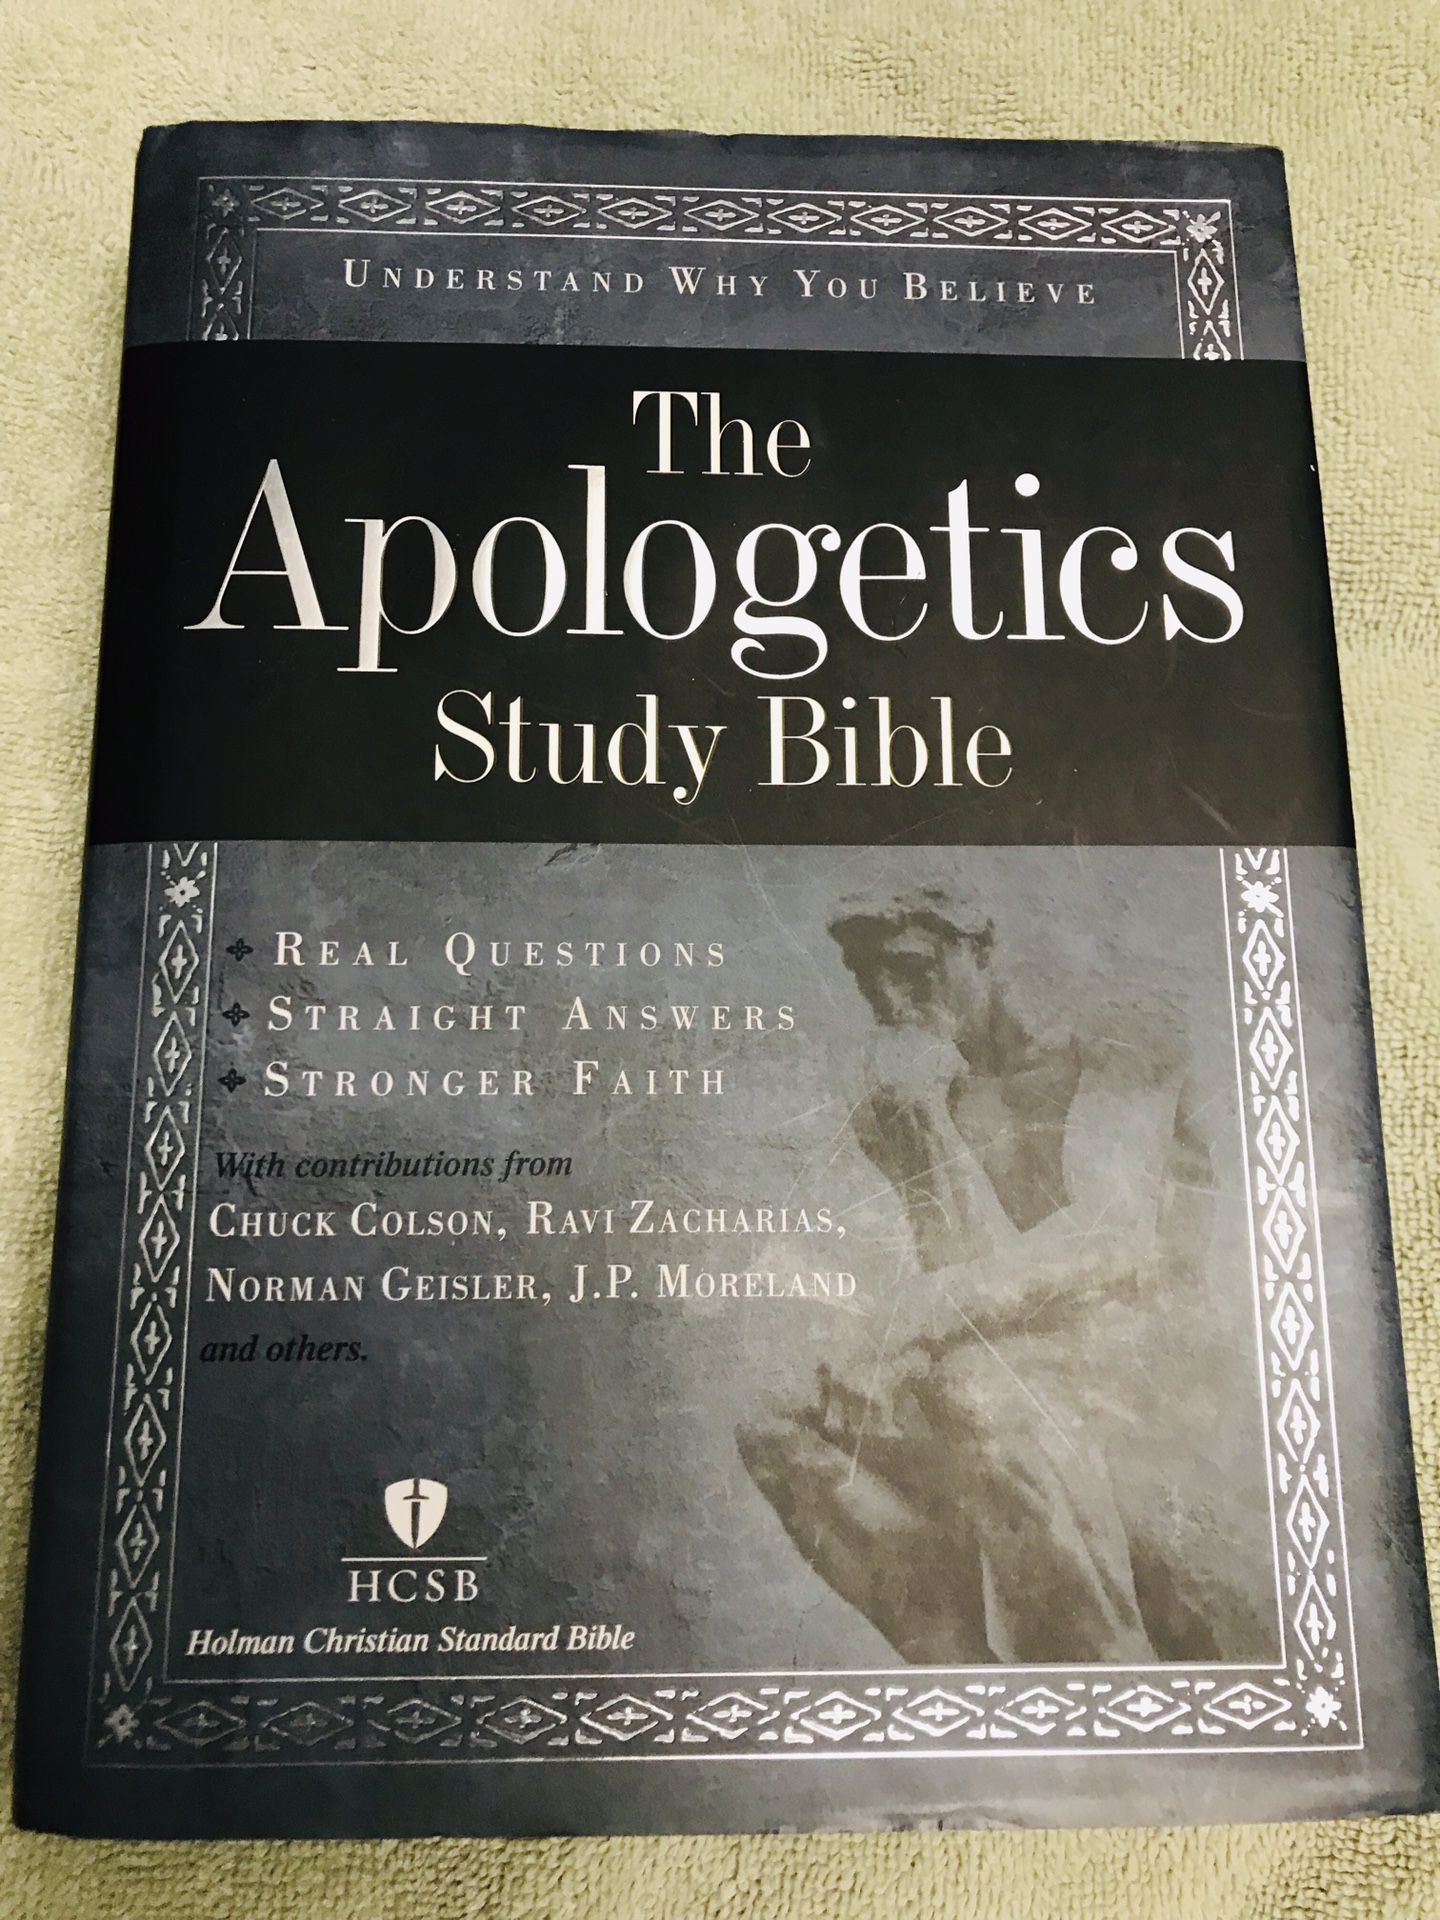 New apologetics study Bible